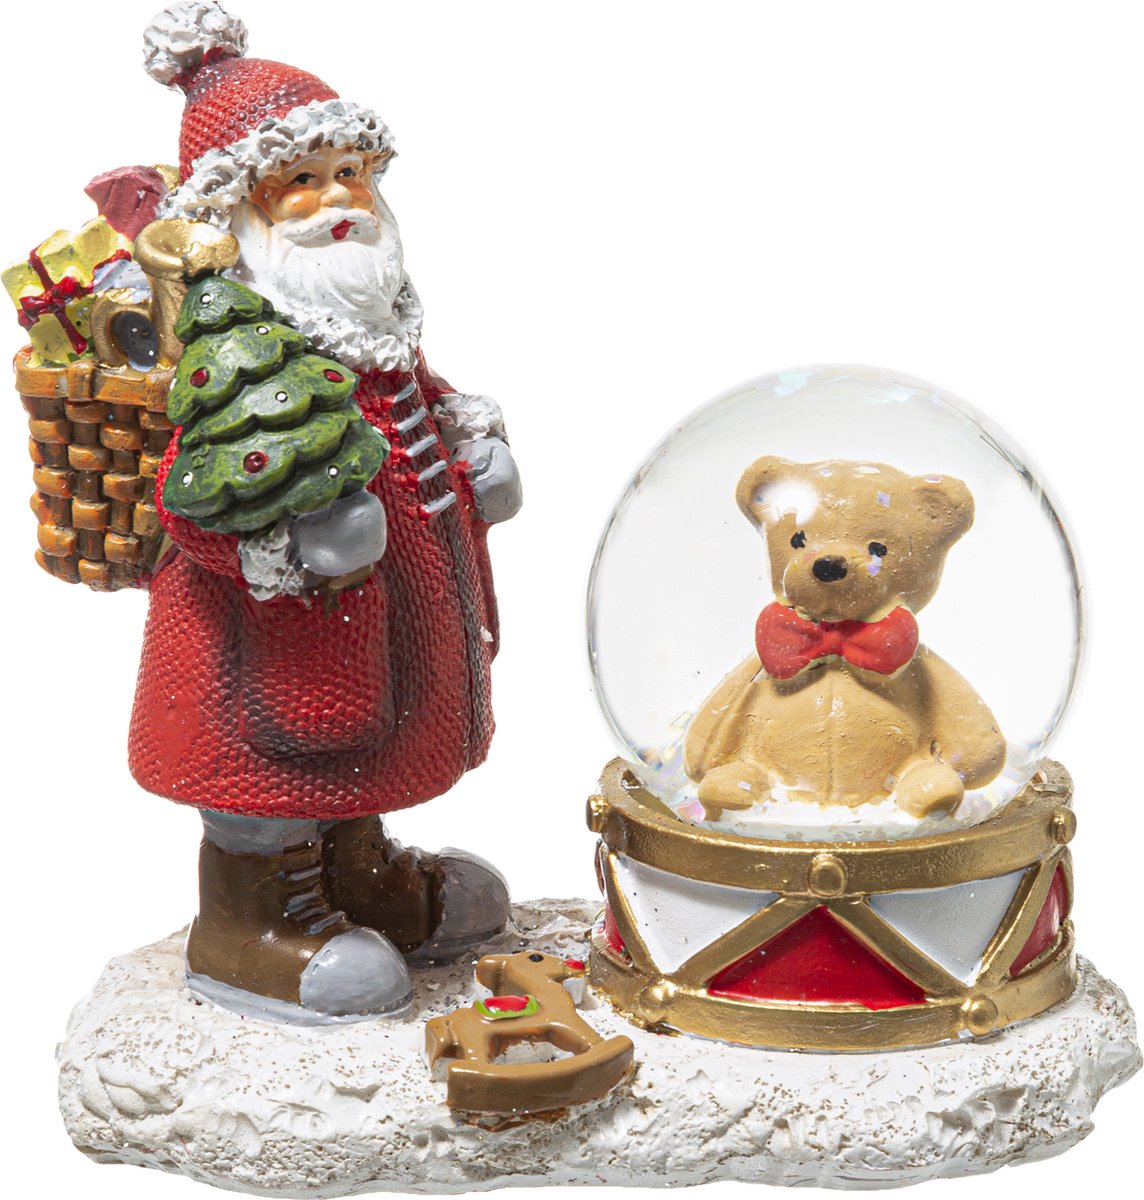 Sweeuwbol kleine beer en kerstman - 45MM - Snowglobe